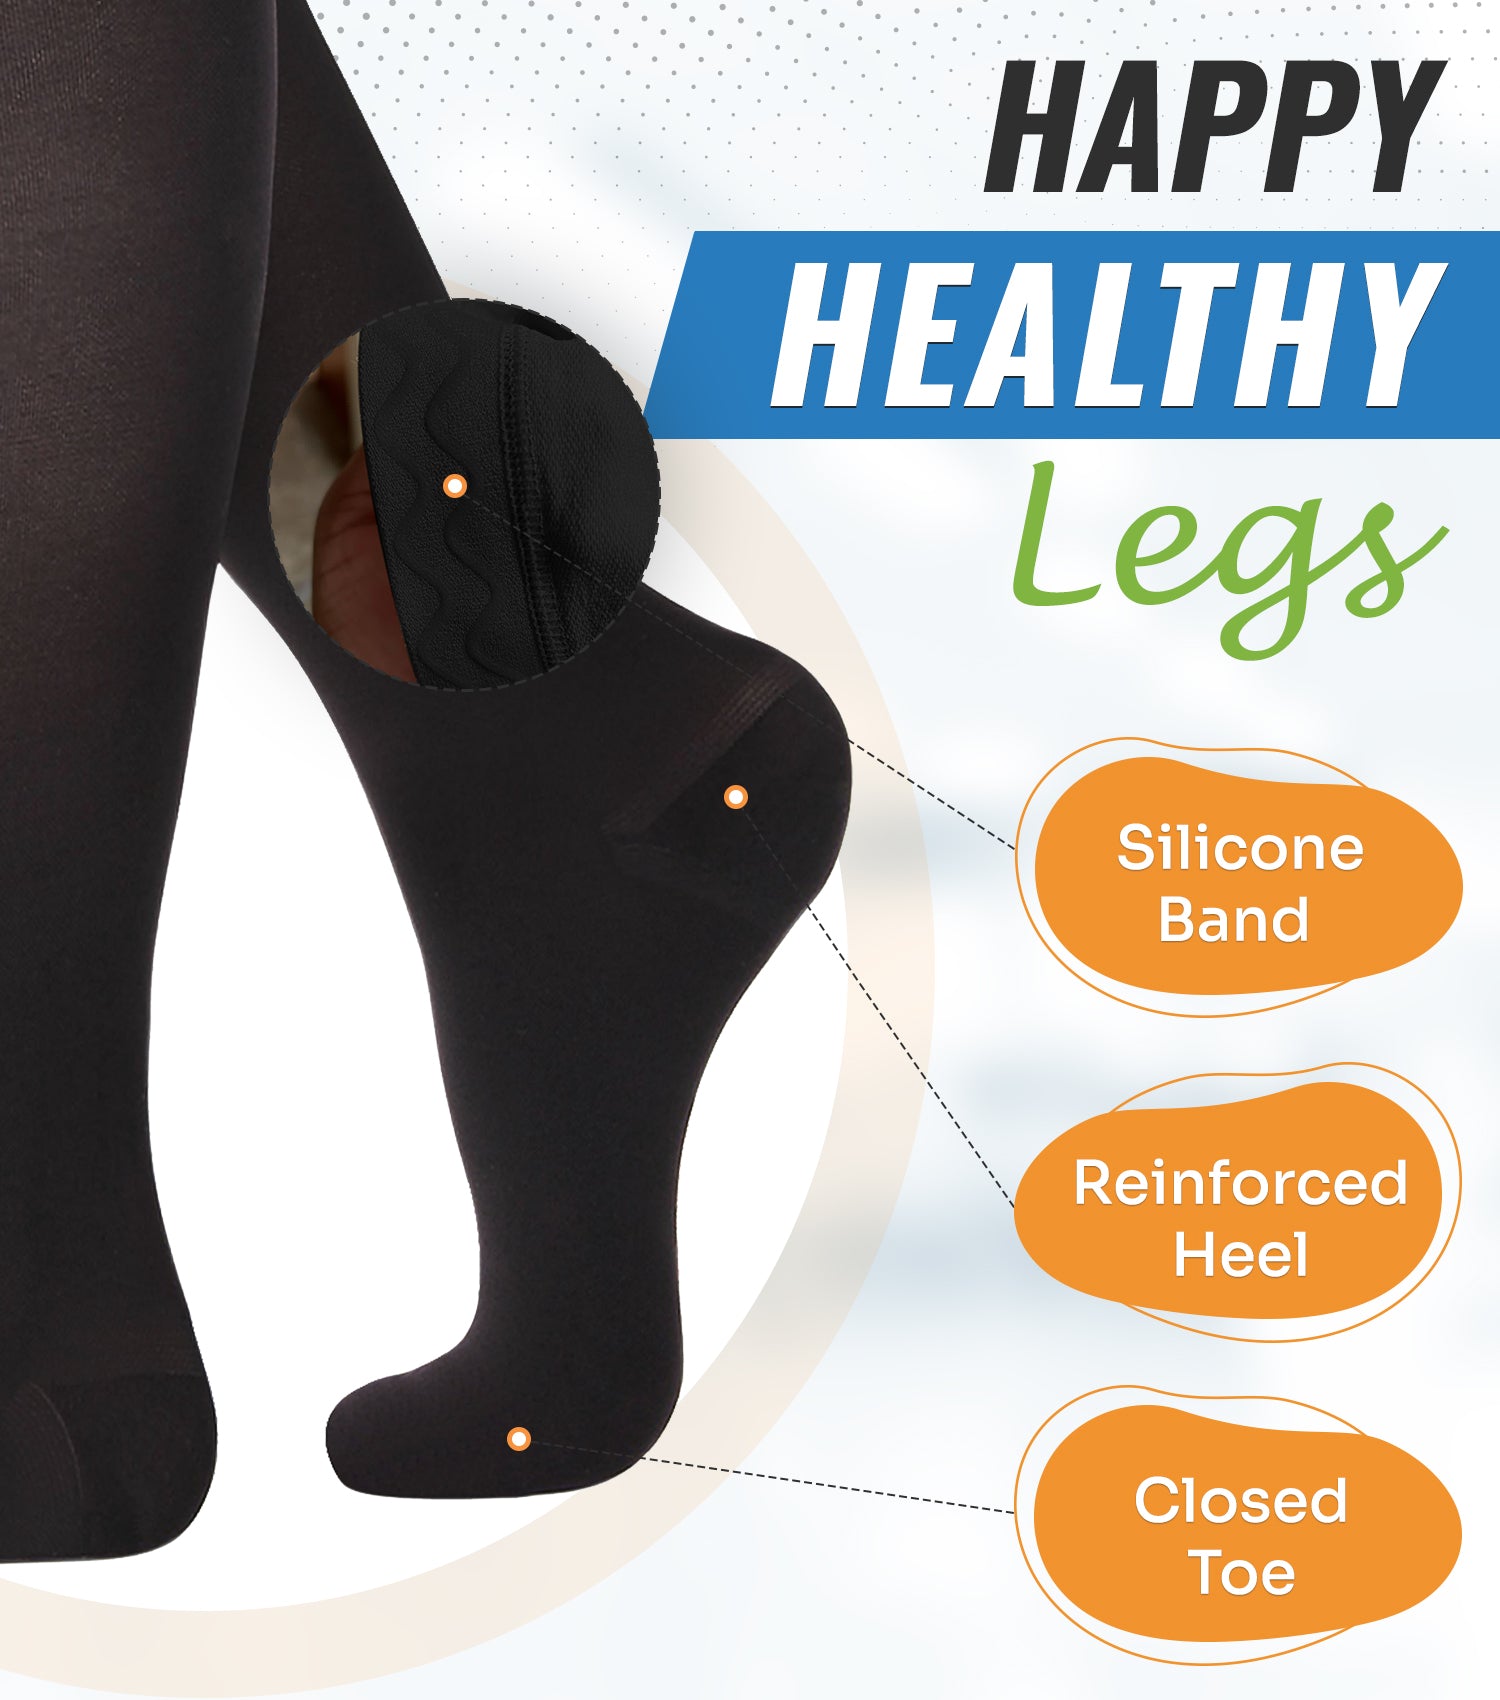 Happy Healthy Legs